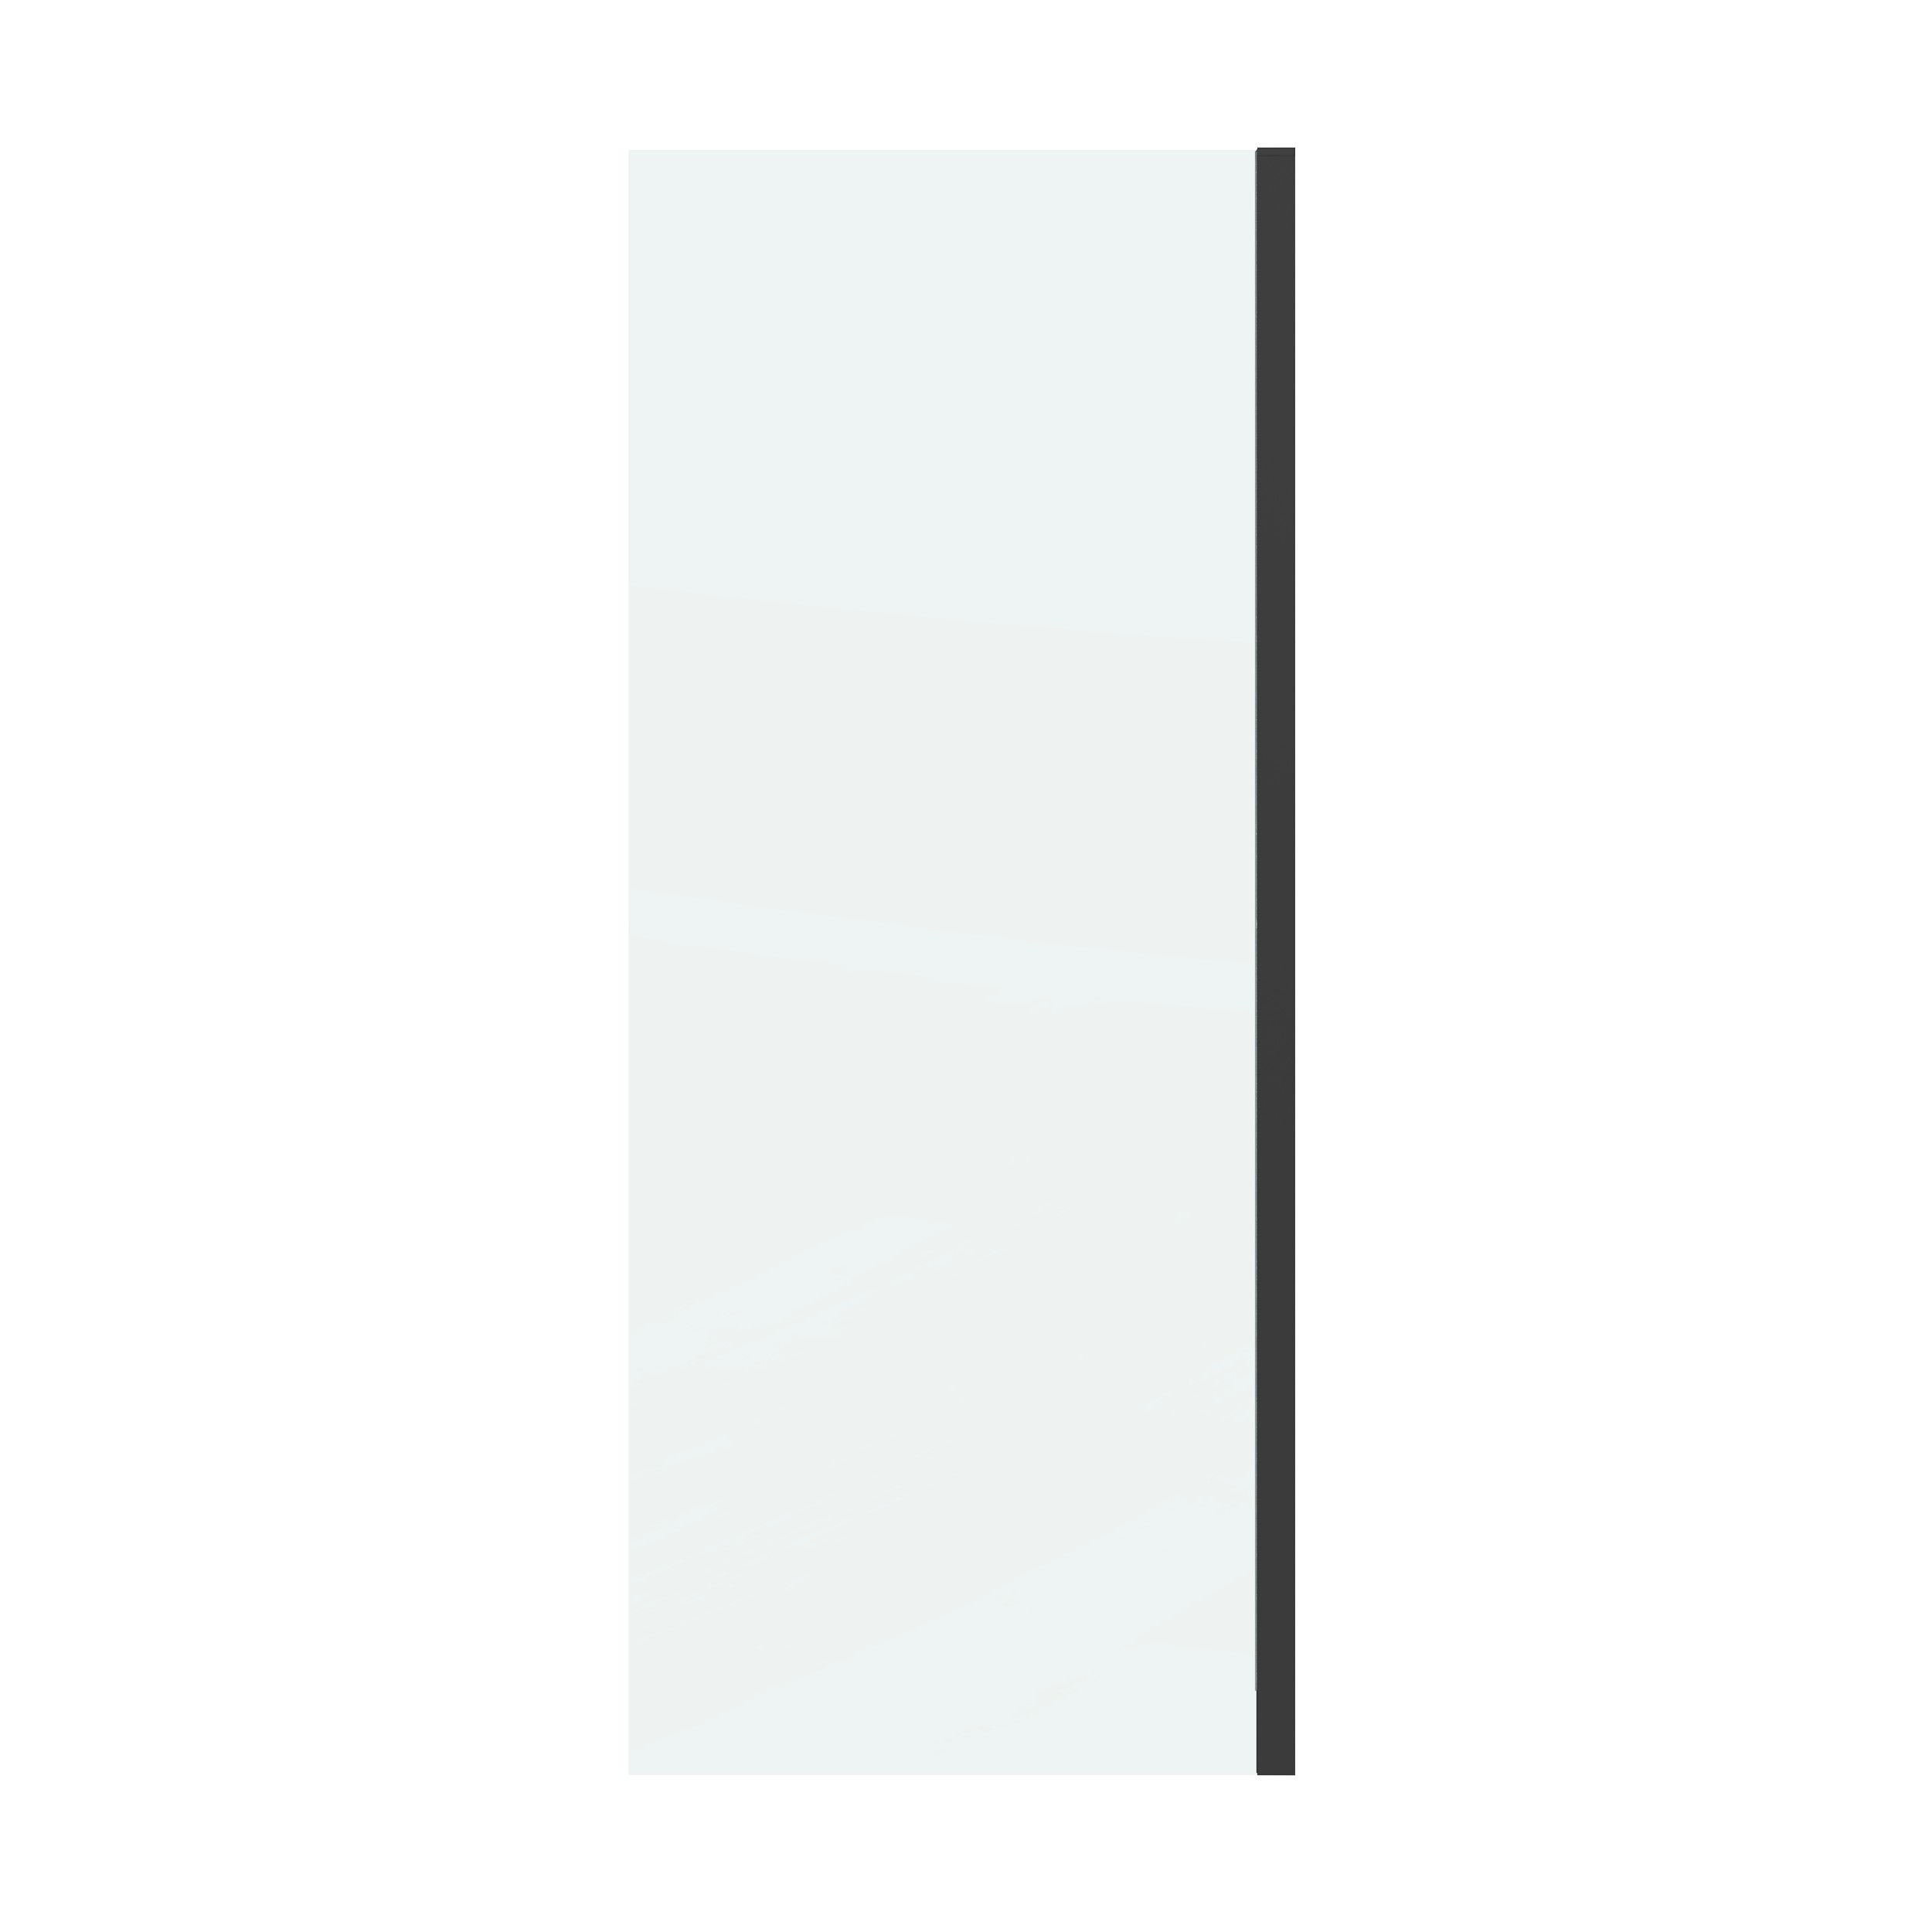 Боковая стенка Grossman Classic 80x195 200.K33.04.80.21.00 стекло прозрачное, профиль черный матовый